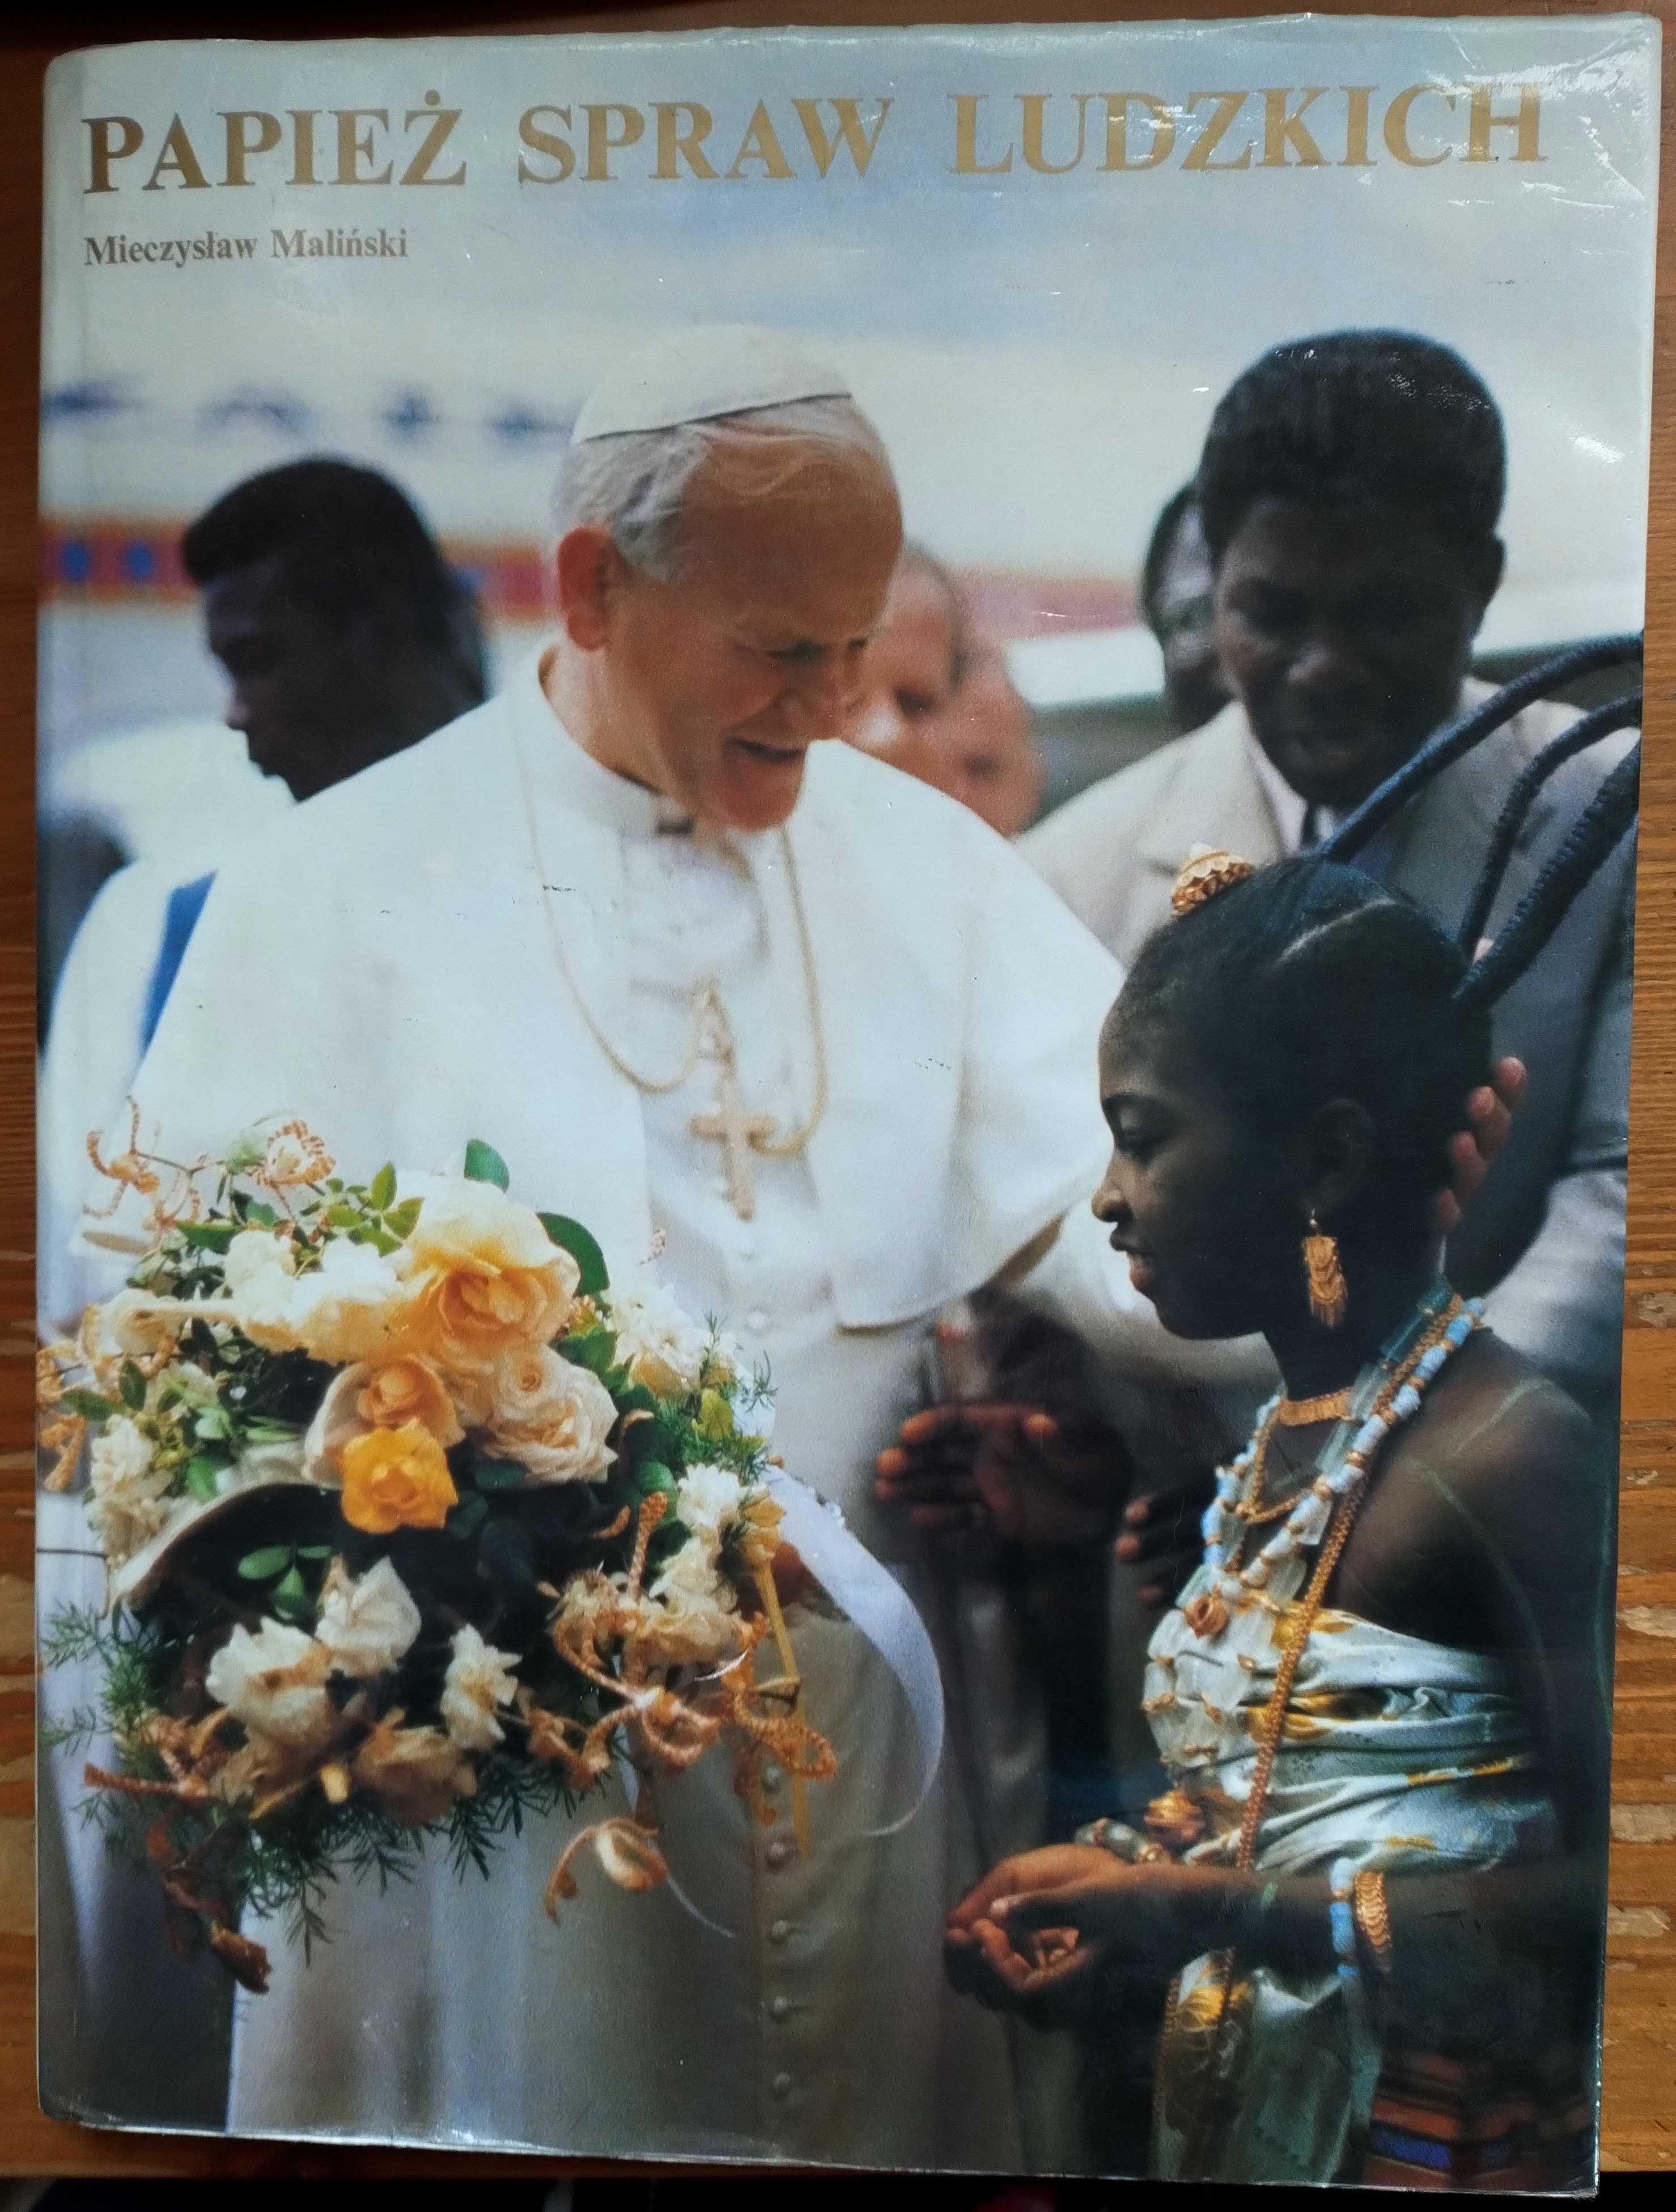 Papież spraw ludzkich, piękny, duży album na prezent